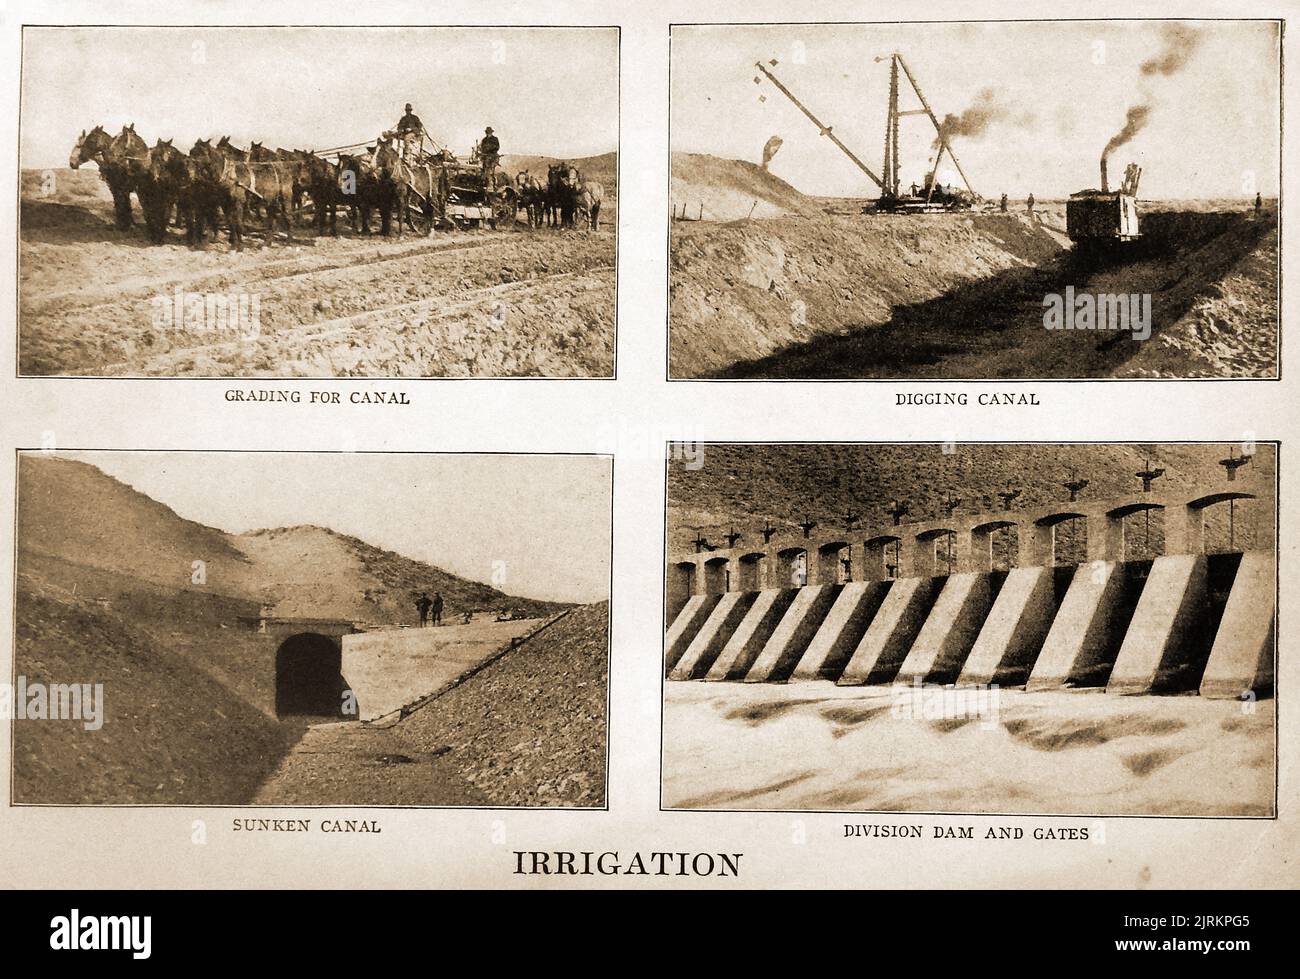 Une illustration britannique vintage montrant 4 étapes dans la construction d'un barrage à l'aide d'équipement de base, y compris des charrettes tirées par des chevaux Banque D'Images